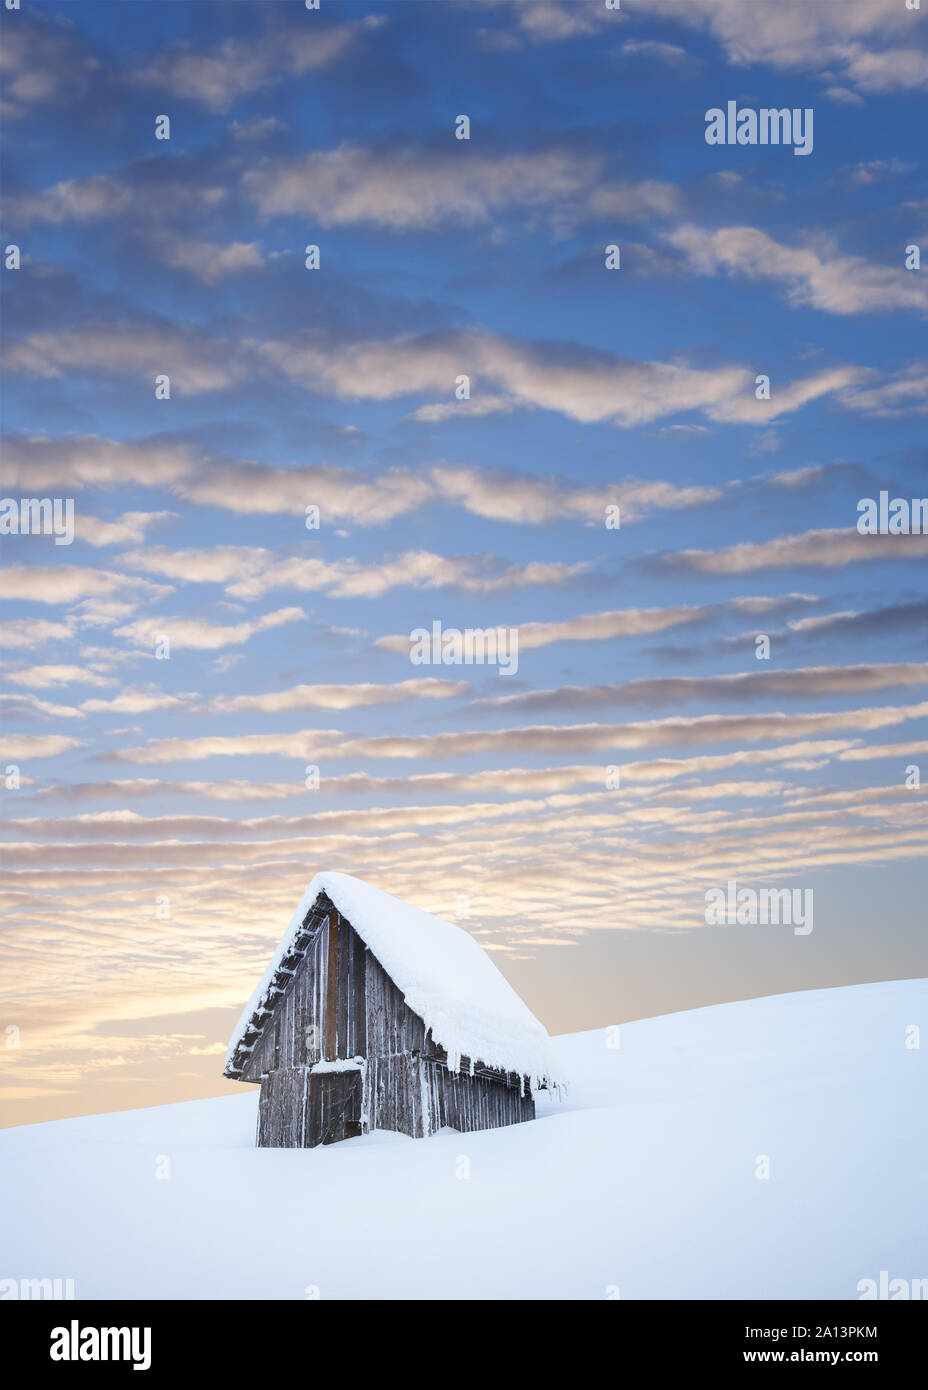 Märchen einsames Haus in den Bergen. Weihnachtskarte mit einem wunderschönen Sonnenuntergang Himmel. Winterlandschaft mit Kopie Raum Stockfoto